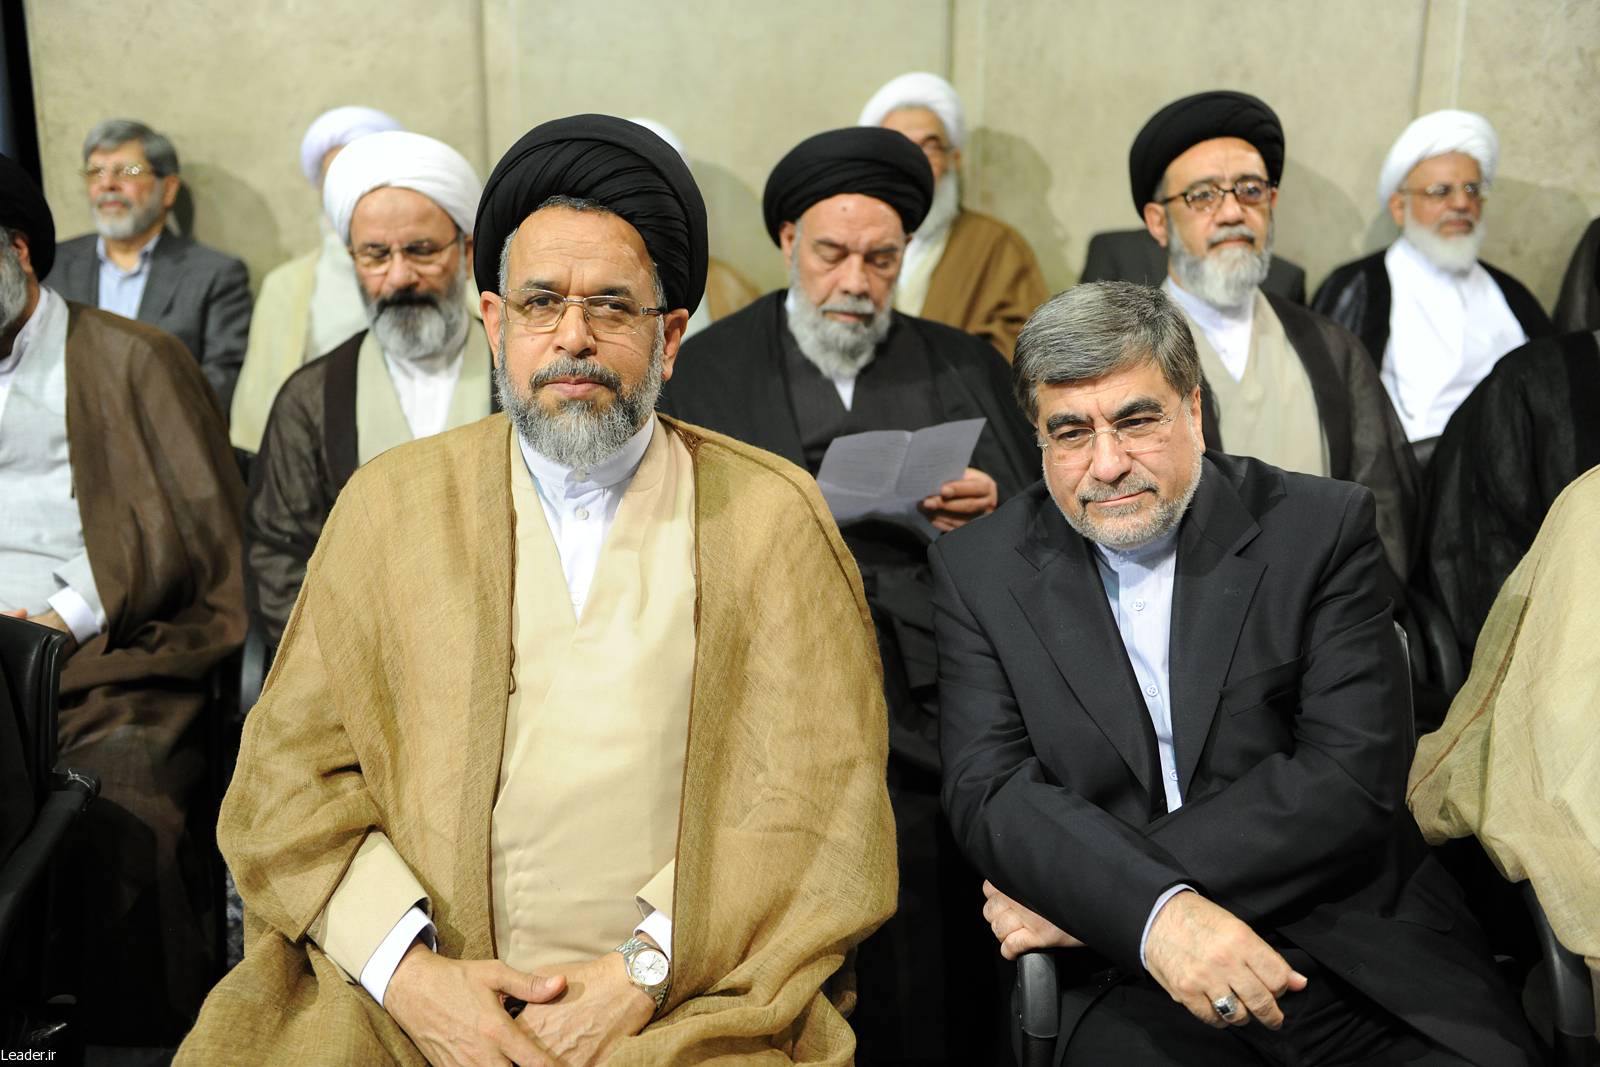 تصاویر : دیدار مسئولان نظام، سفیران کشورهای اسلامی با مقام معظم رهبری